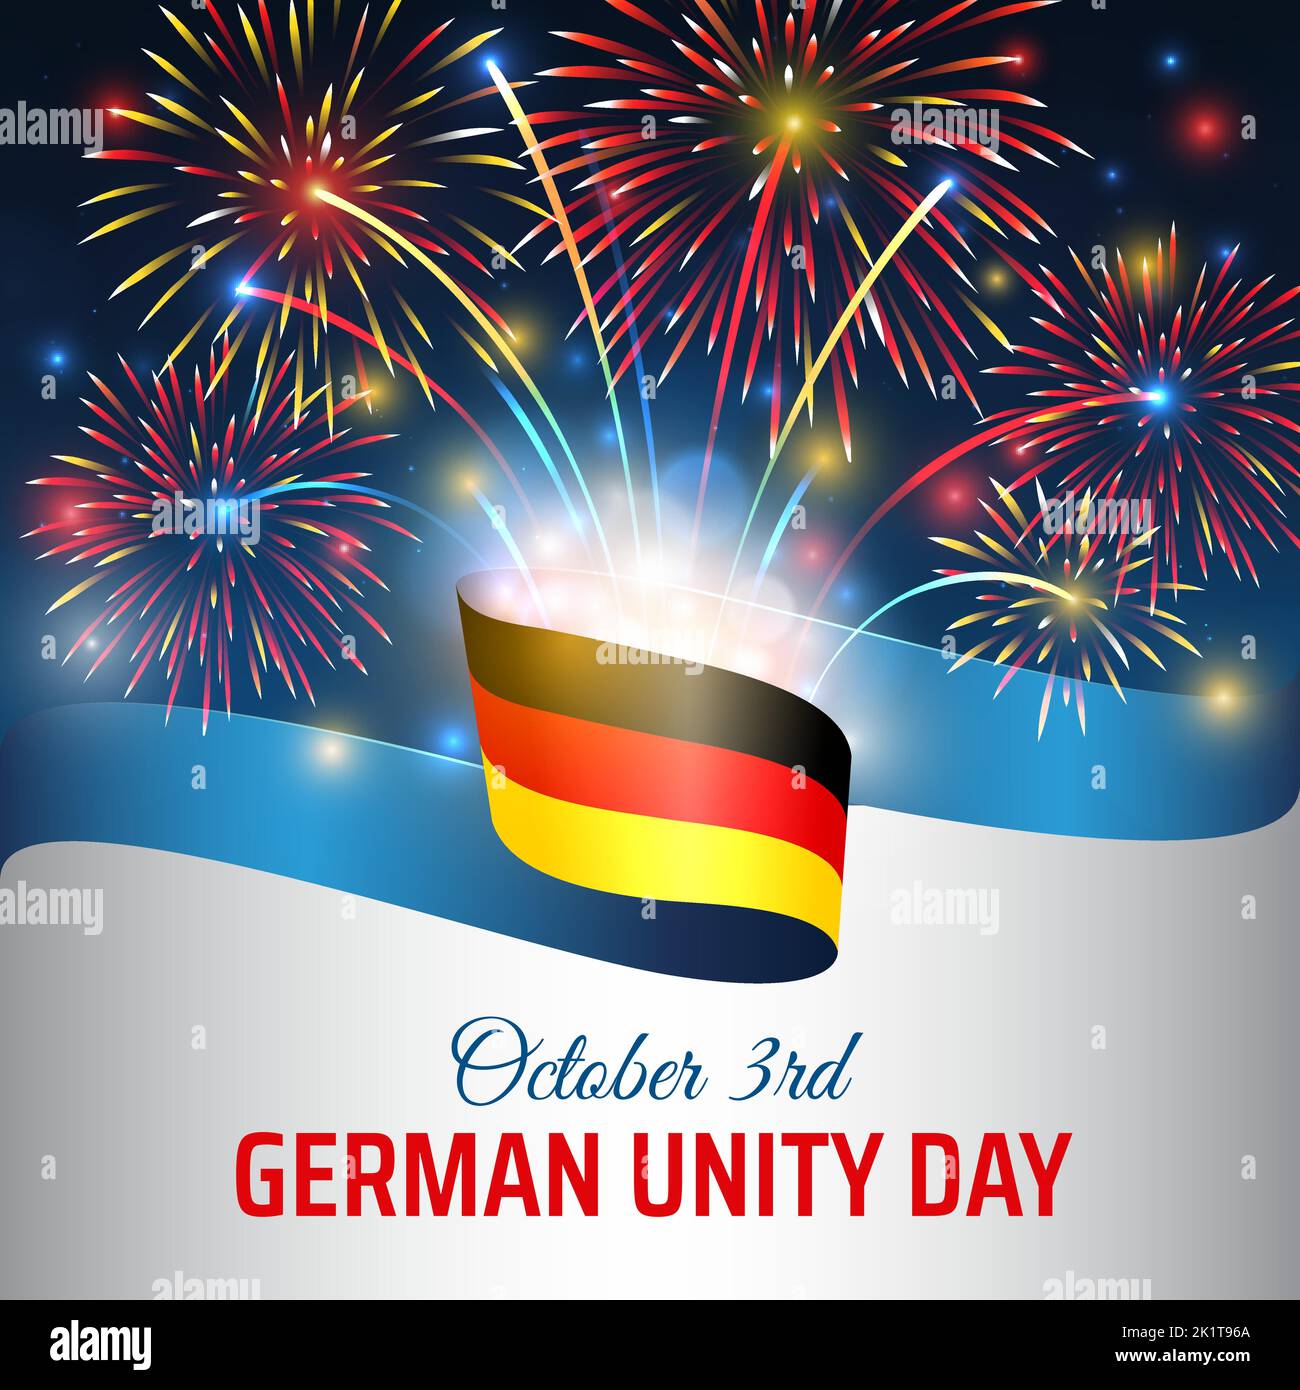 Oktober 3, deutscher Einheitstag, Vektorvorlage mit deutscher Flagge, buntes Feuerwerk auf blauem Nachthimmel-Hintergrund. Deutschland Nationalfeiertag oktober 3. Stock Vektor